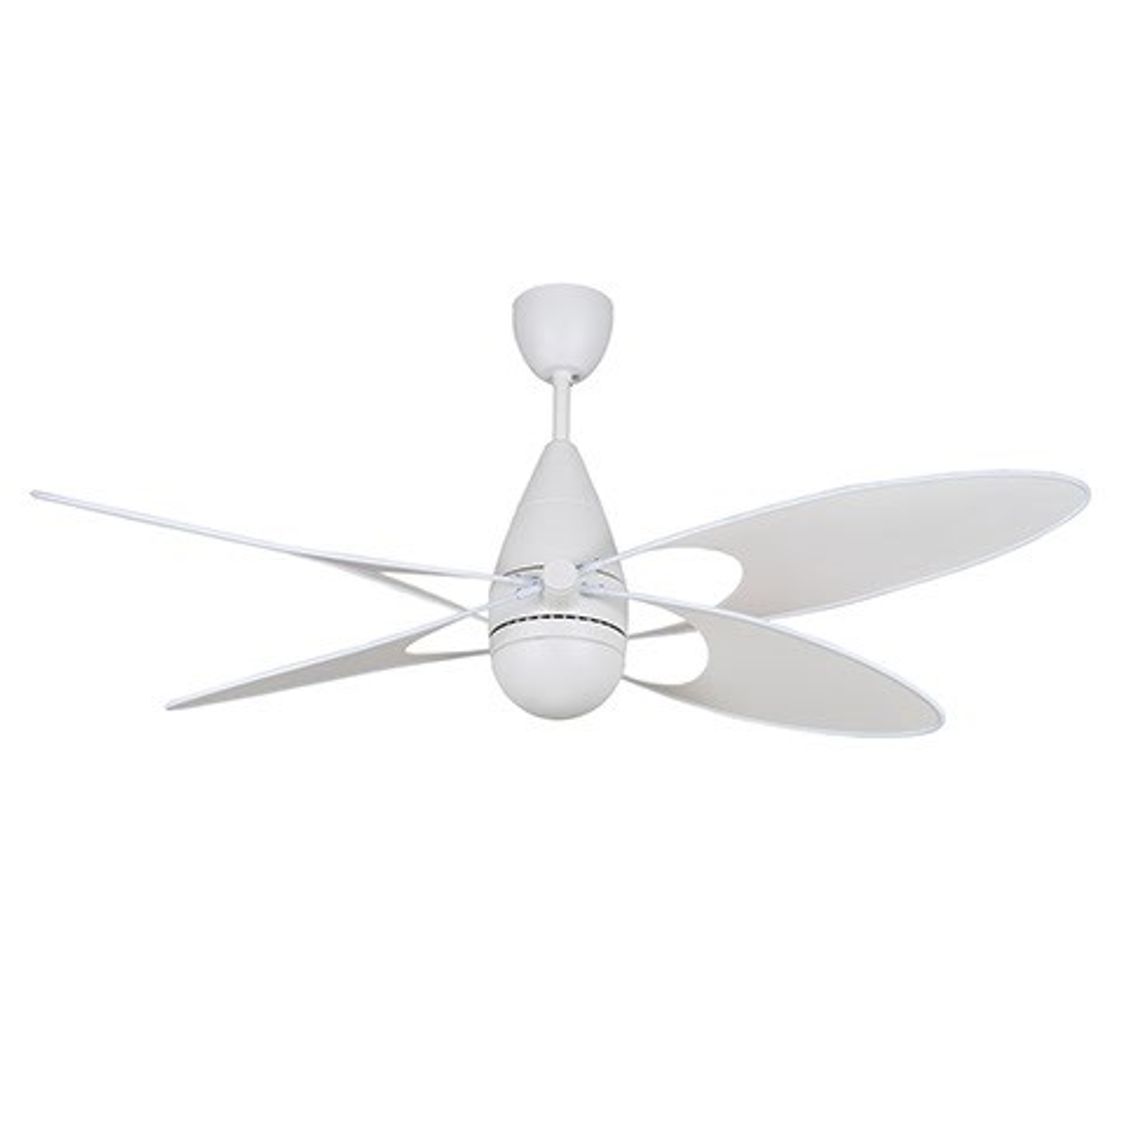 NSB - BUTTERFLY 54-Inch Ceiling Fan (White)